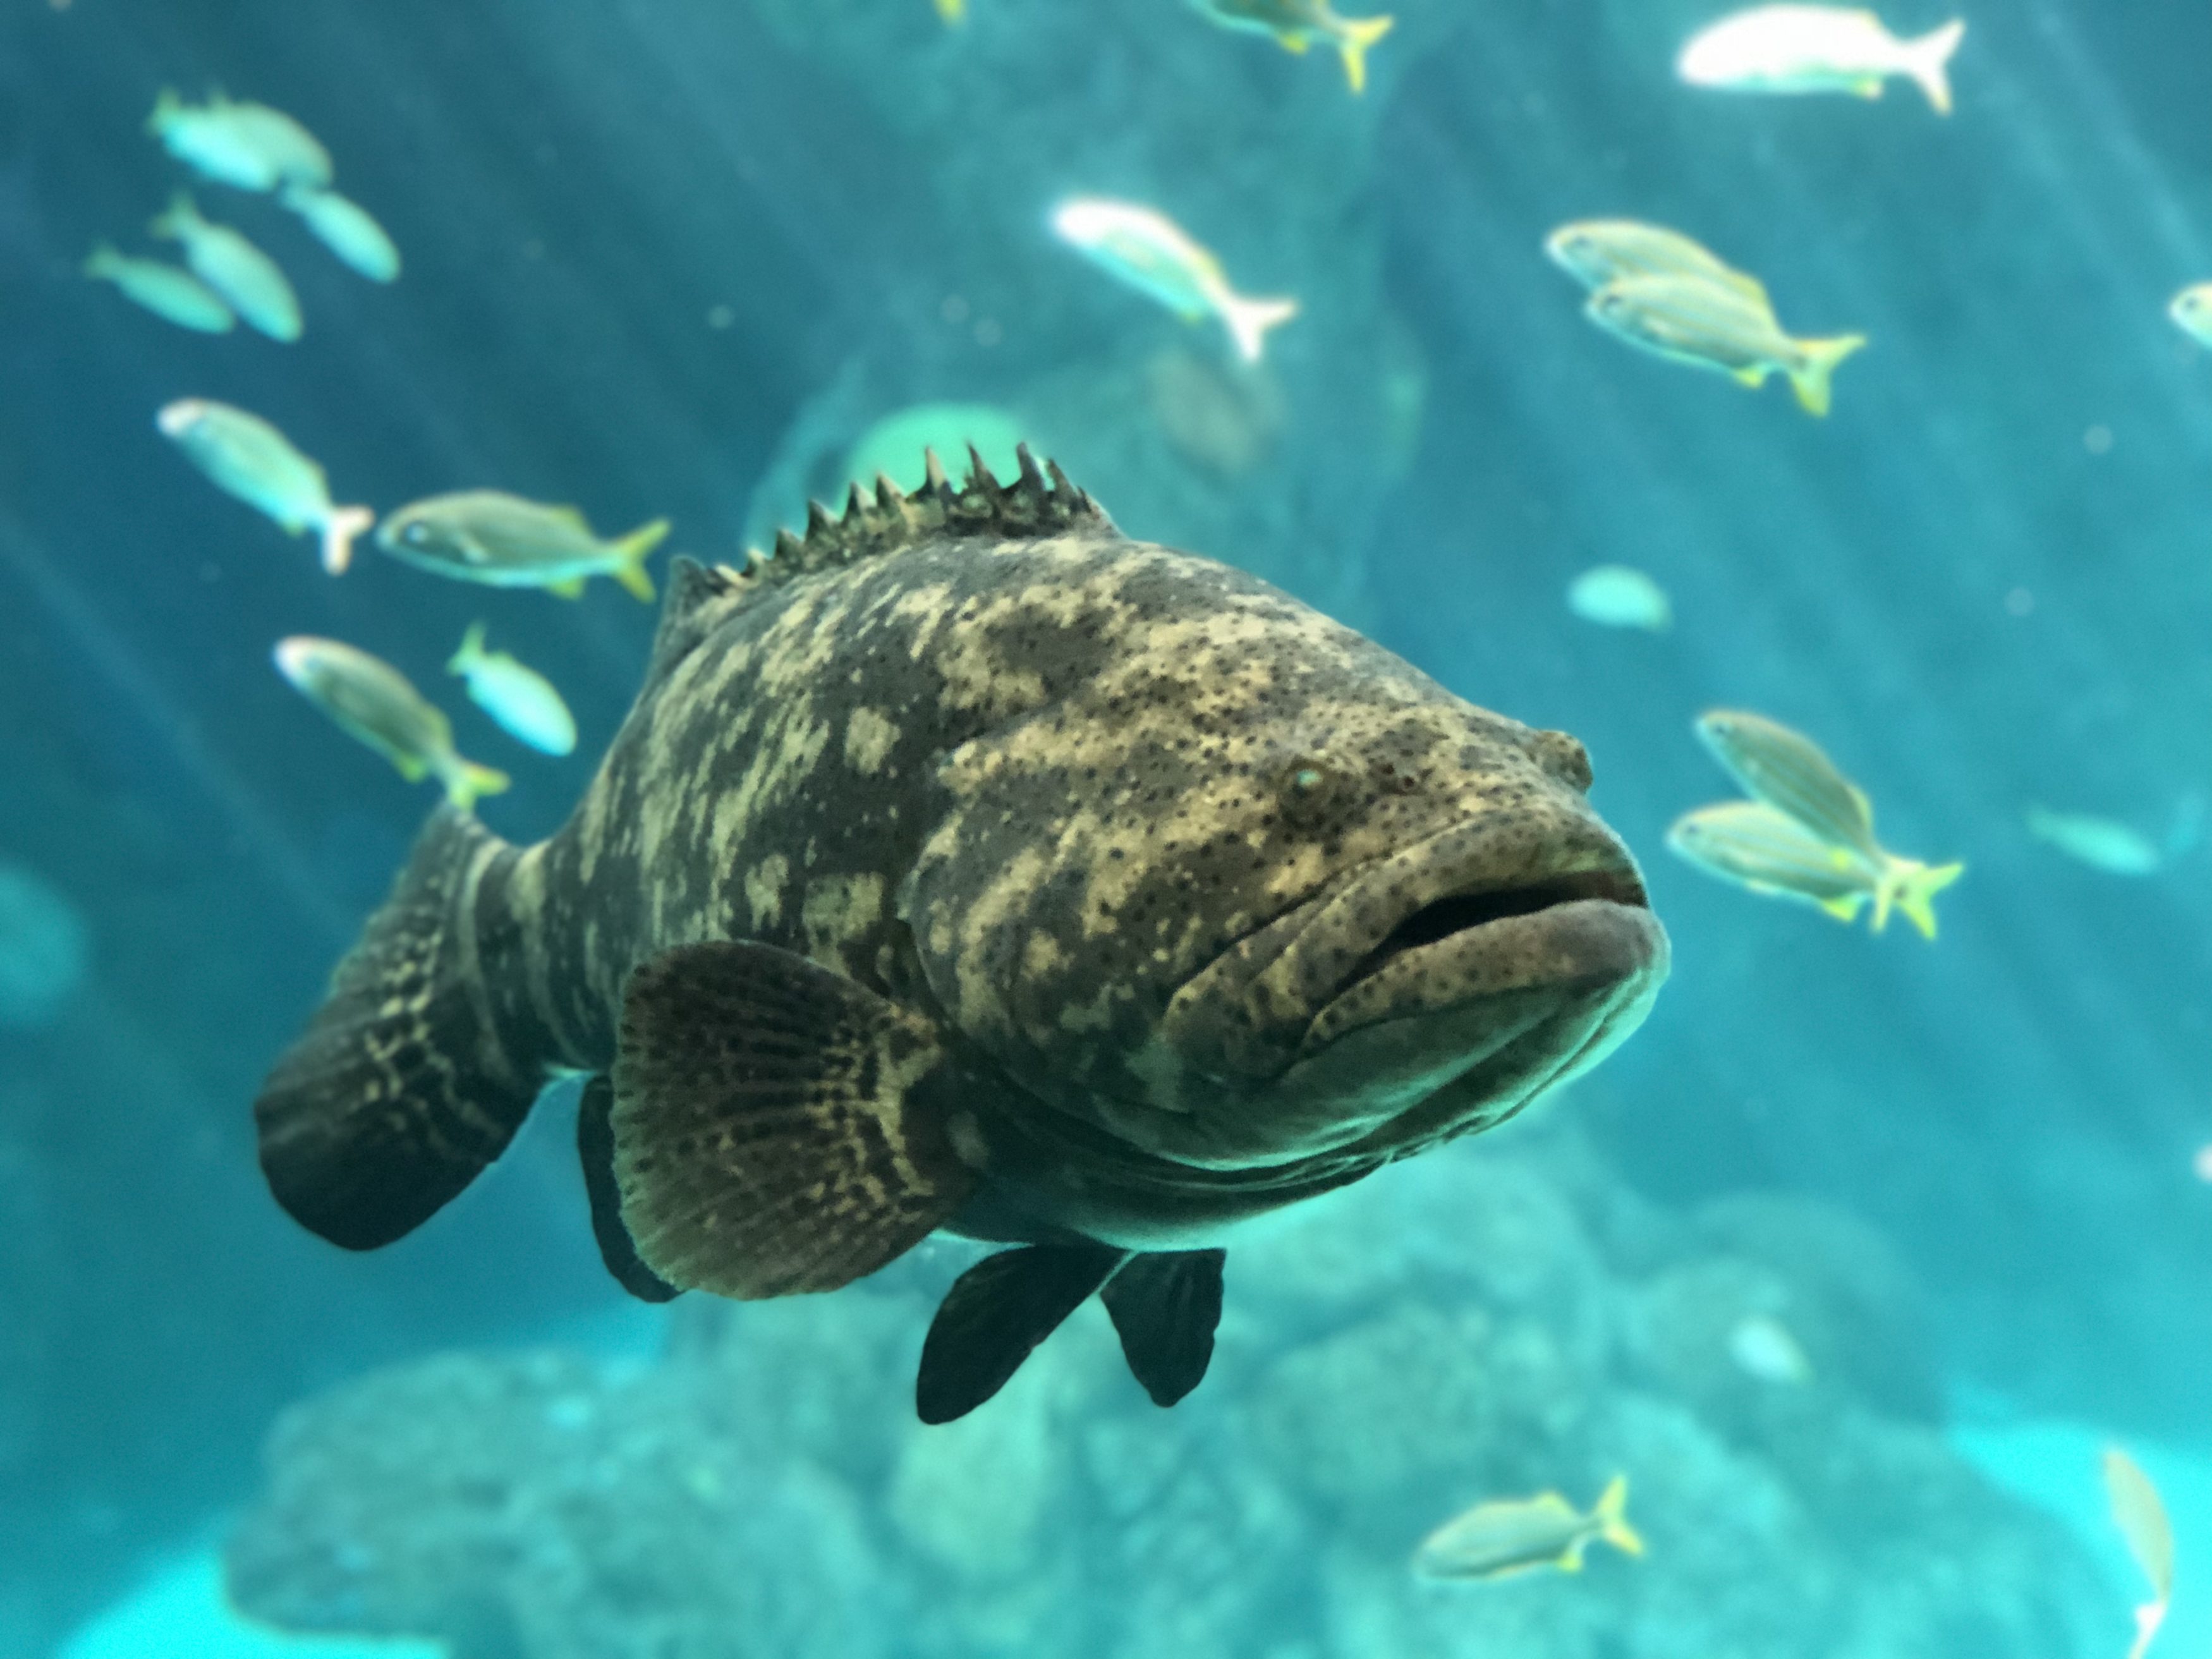 Florida Aquarium visit shutdown